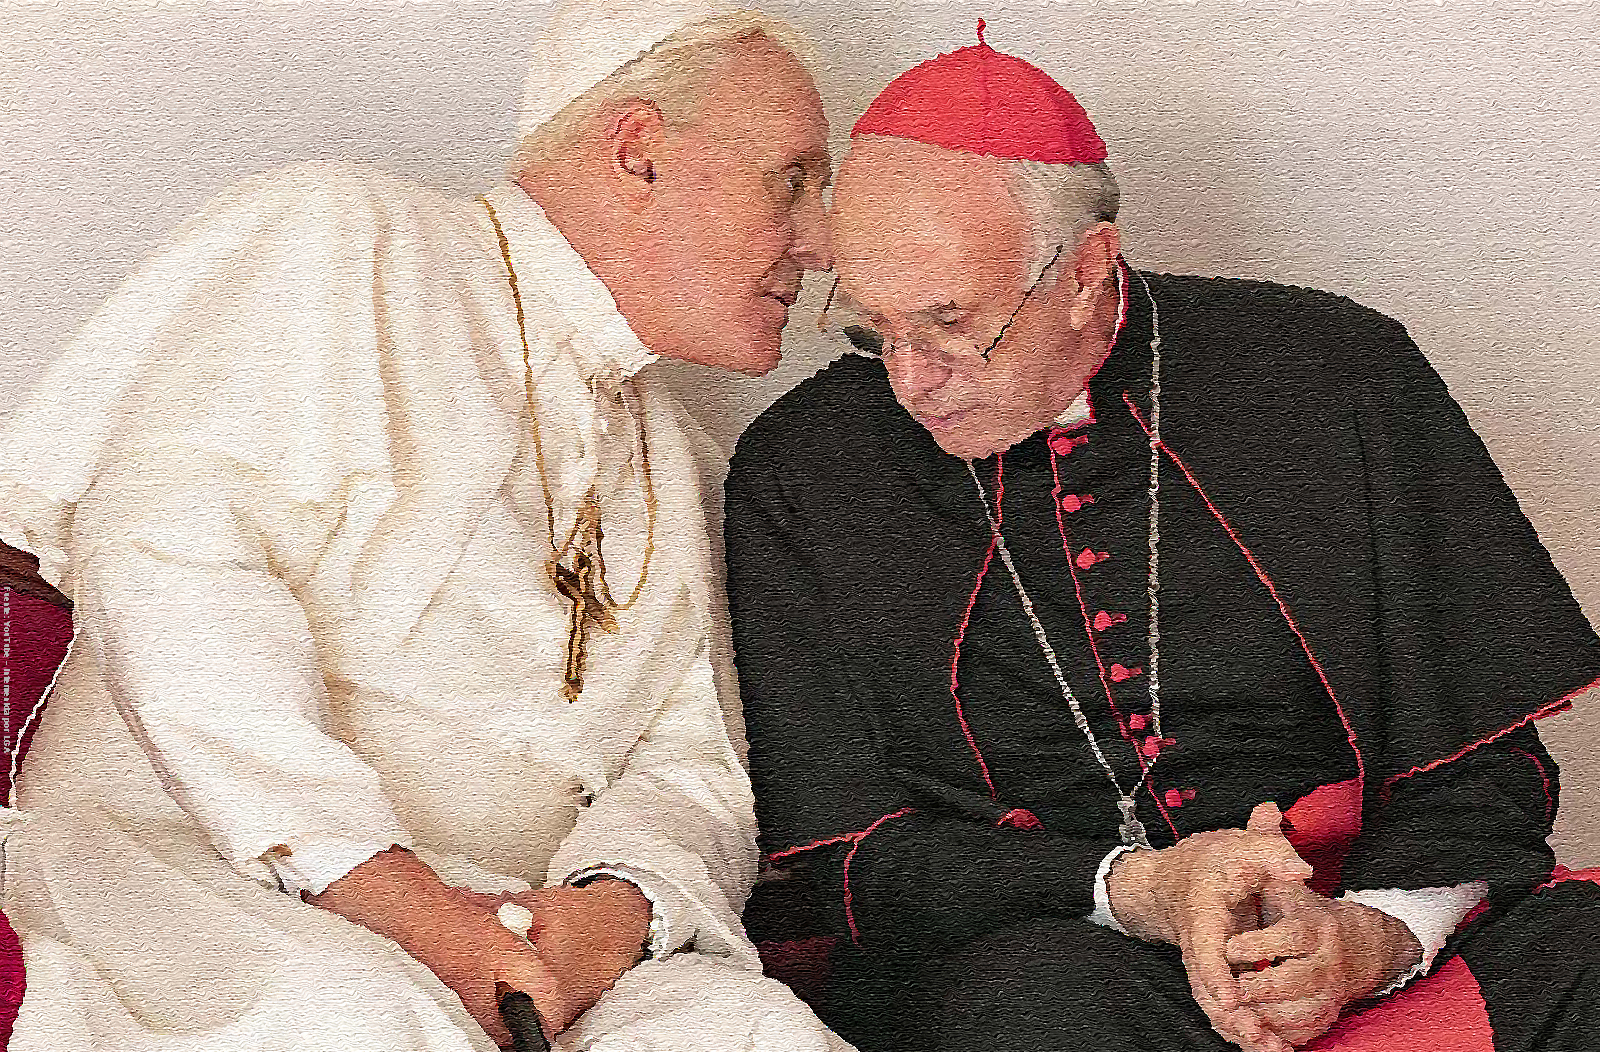 El catálogo de los Premios Oscar: “The Two Popes” explora una inimaginable amistad tras las paredes de El Vaticano - María Antonieta Rondón